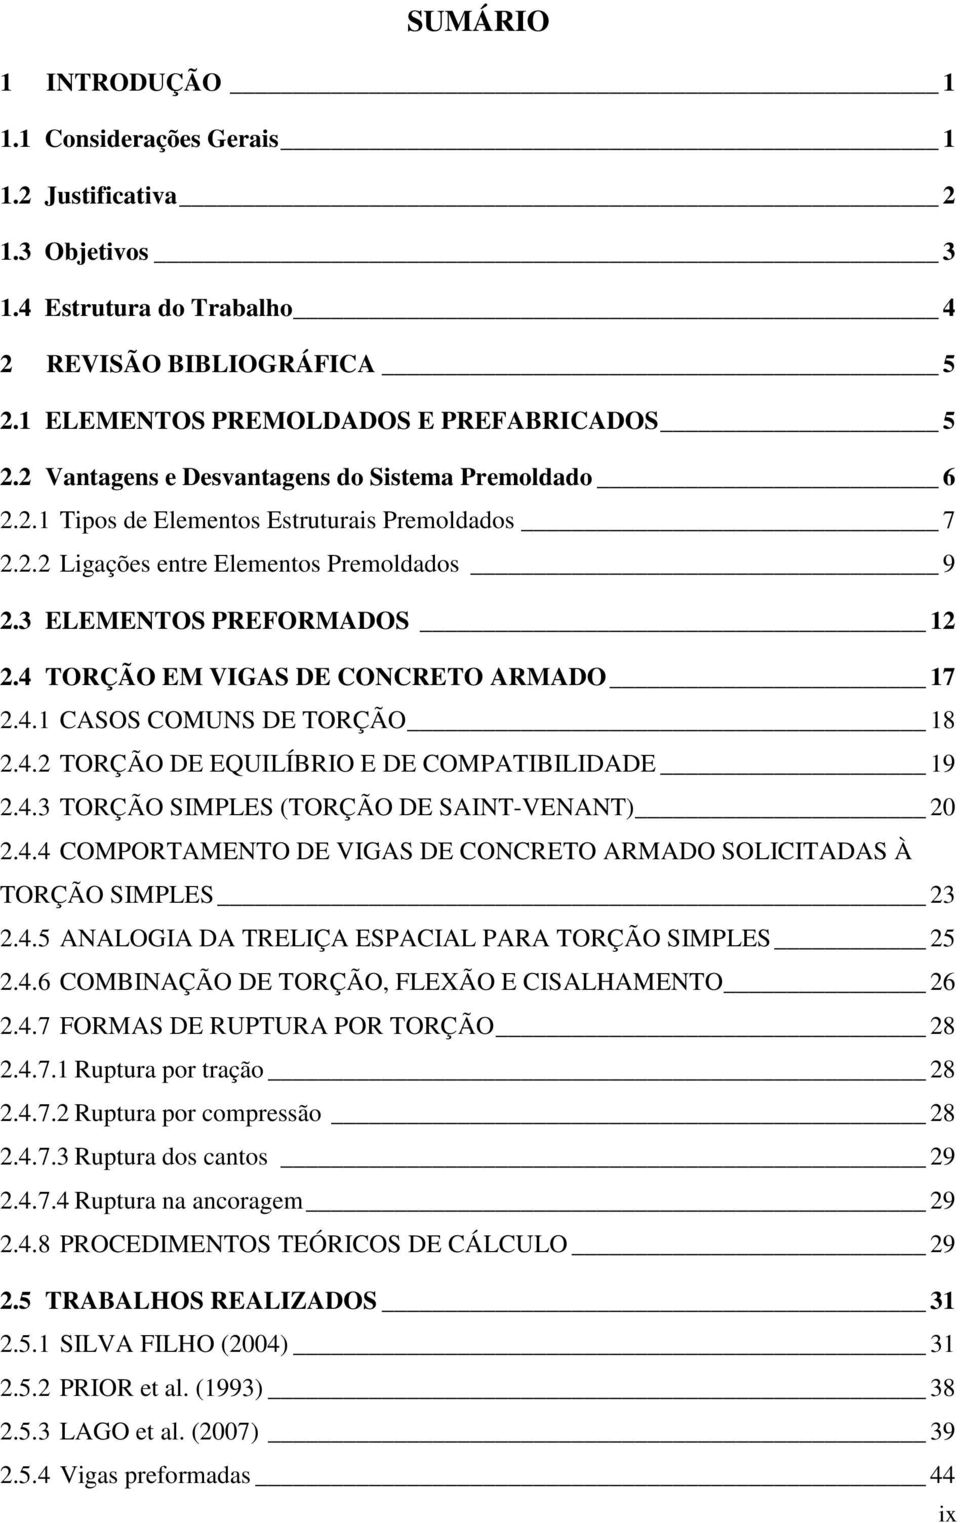 4 TORÇÃO EM VIGAS DE CONCRETO ARMADO 17 2.4.1 CASOS COMUNS DE TORÇÃO 18 2.4.2 TORÇÃO DE EQUILÍBRIO E DE COMPATIBILIDADE 19 2.4.3 TORÇÃO SIMPLES (TORÇÃO DE SAINT-VENANT) 20 2.4.4 COMPORTAMENTO DE VIGAS DE CONCRETO ARMADO SOLICITADAS À TORÇÃO SIMPLES 23 2.